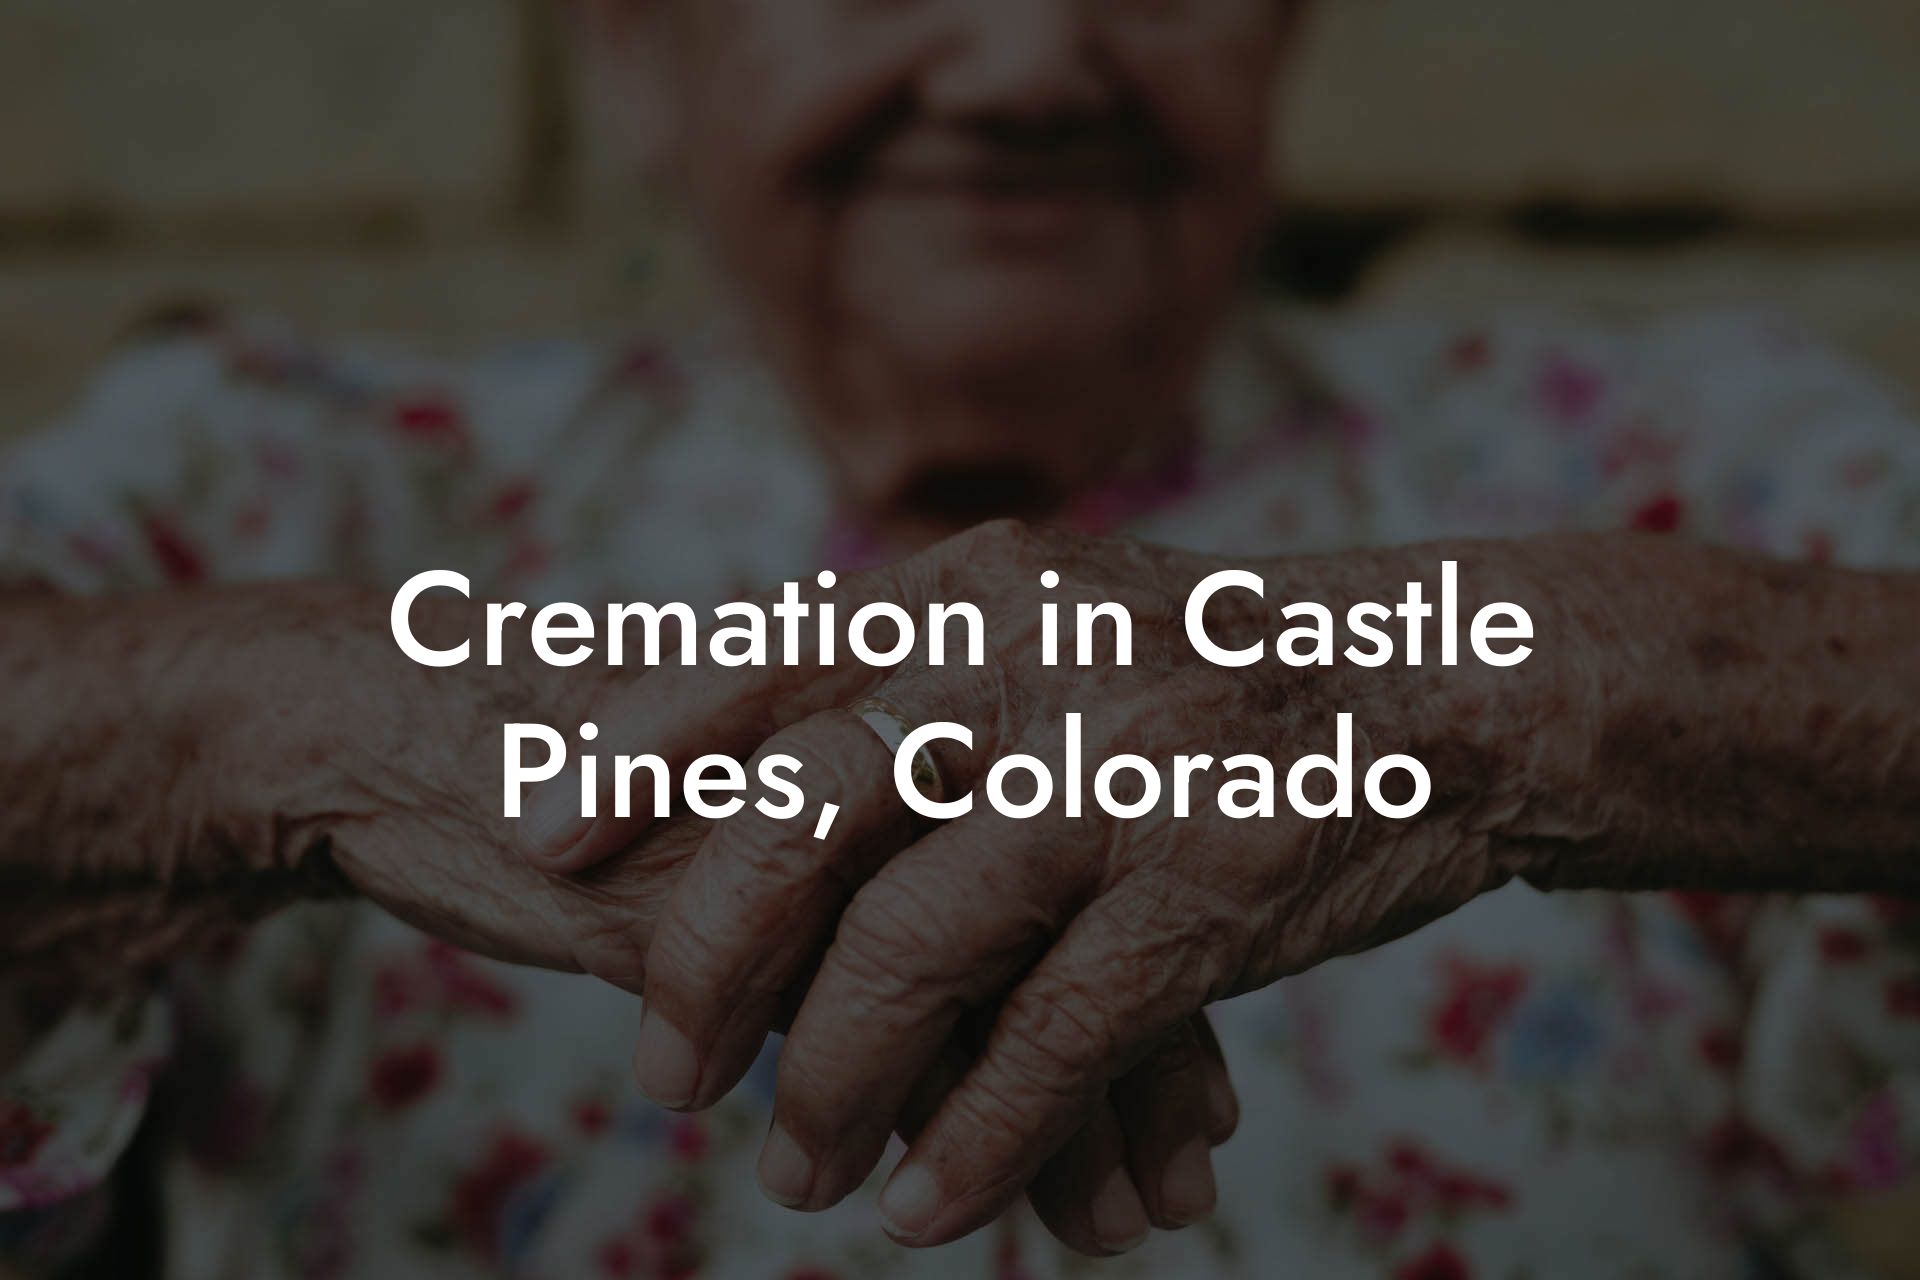 Cremation in Castle Pines, Colorado